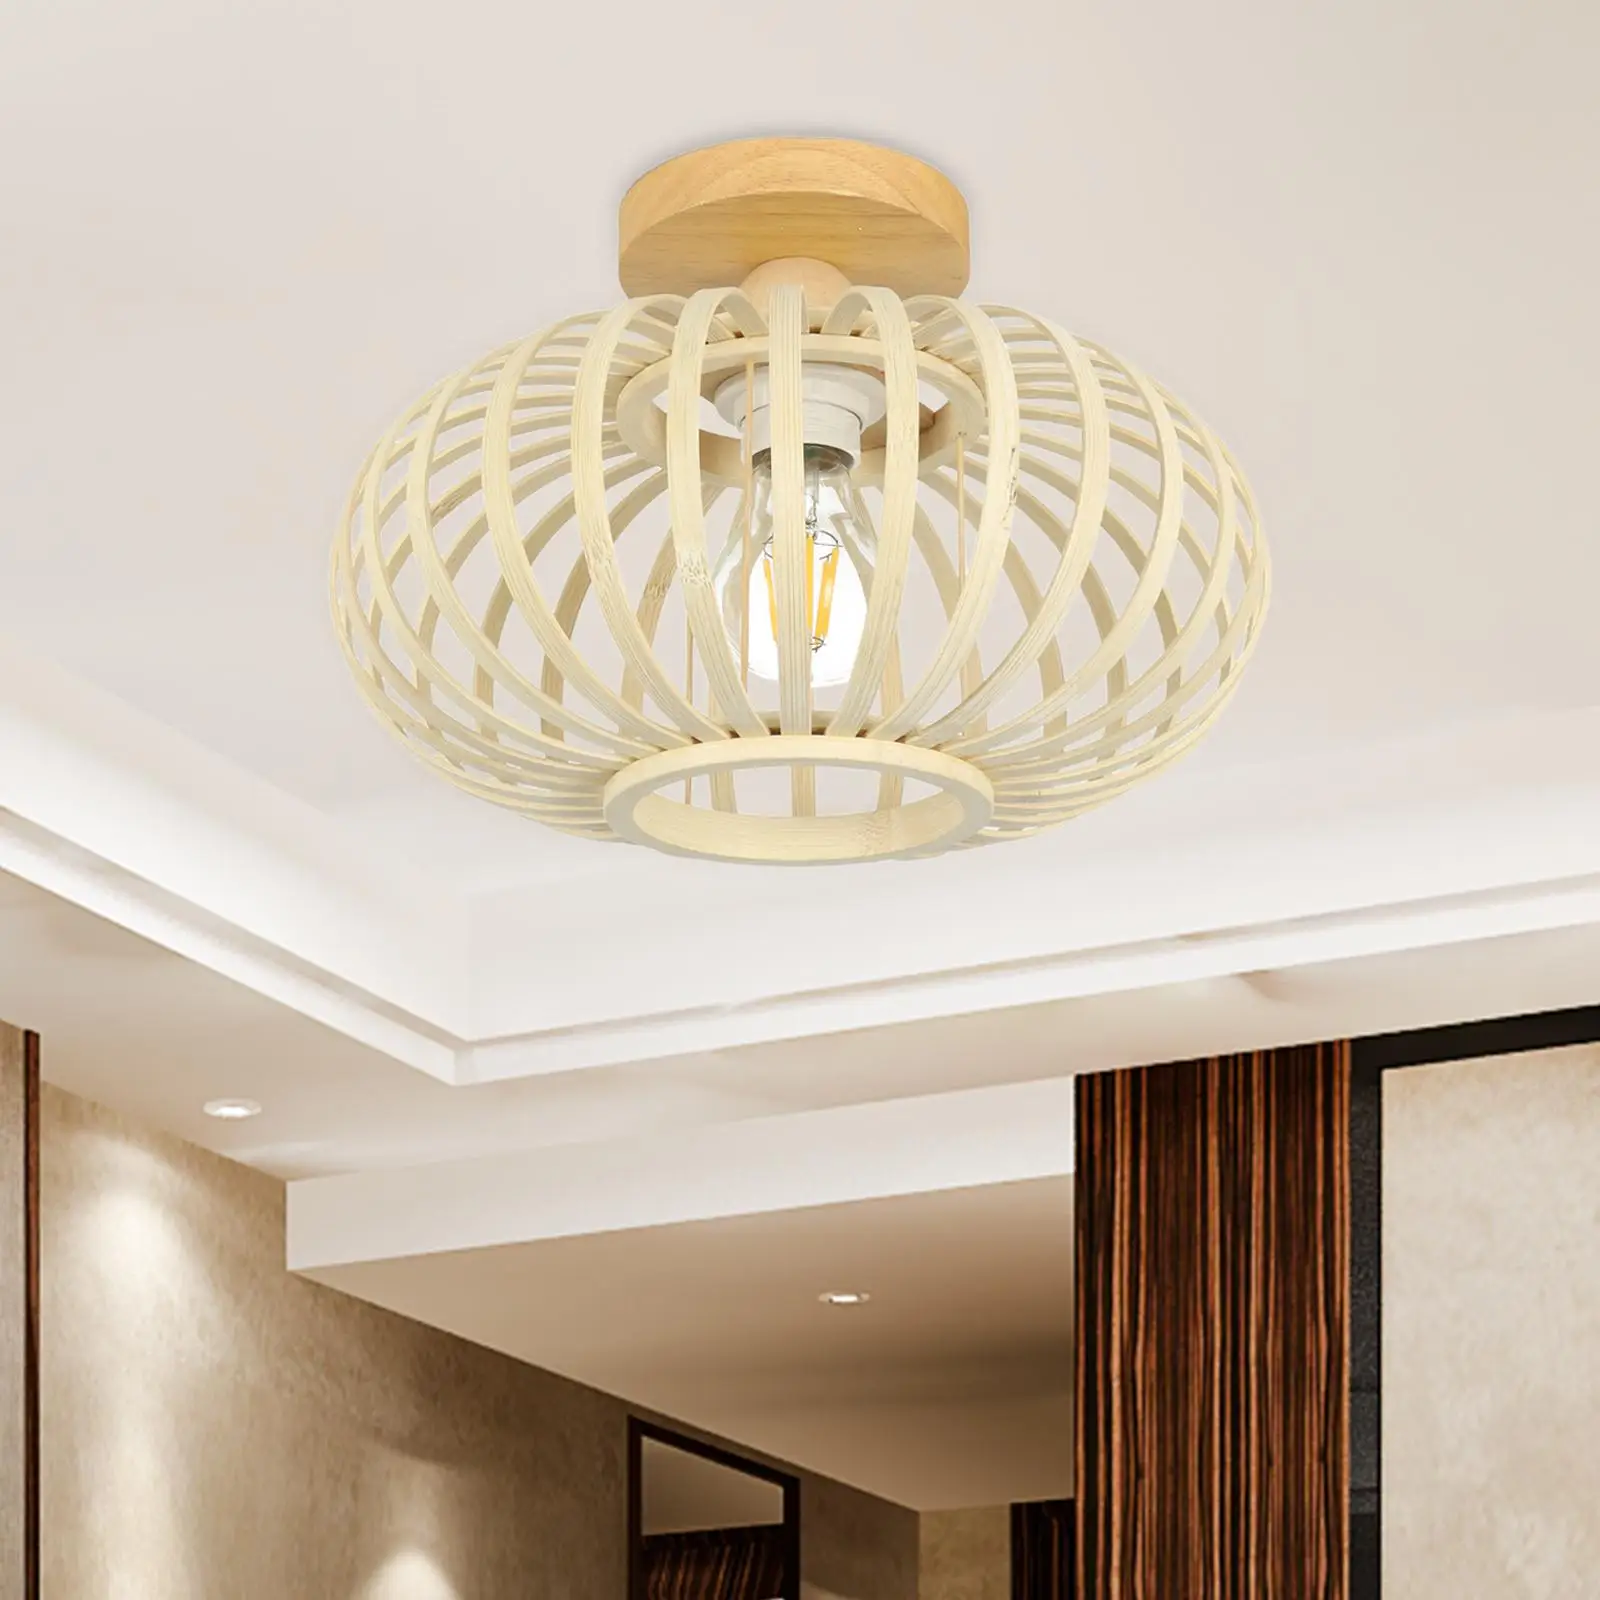 Ceiling Lamp EU Plug E27/E26 Woven Ceiling Light Shade for Home Bathroom Bar